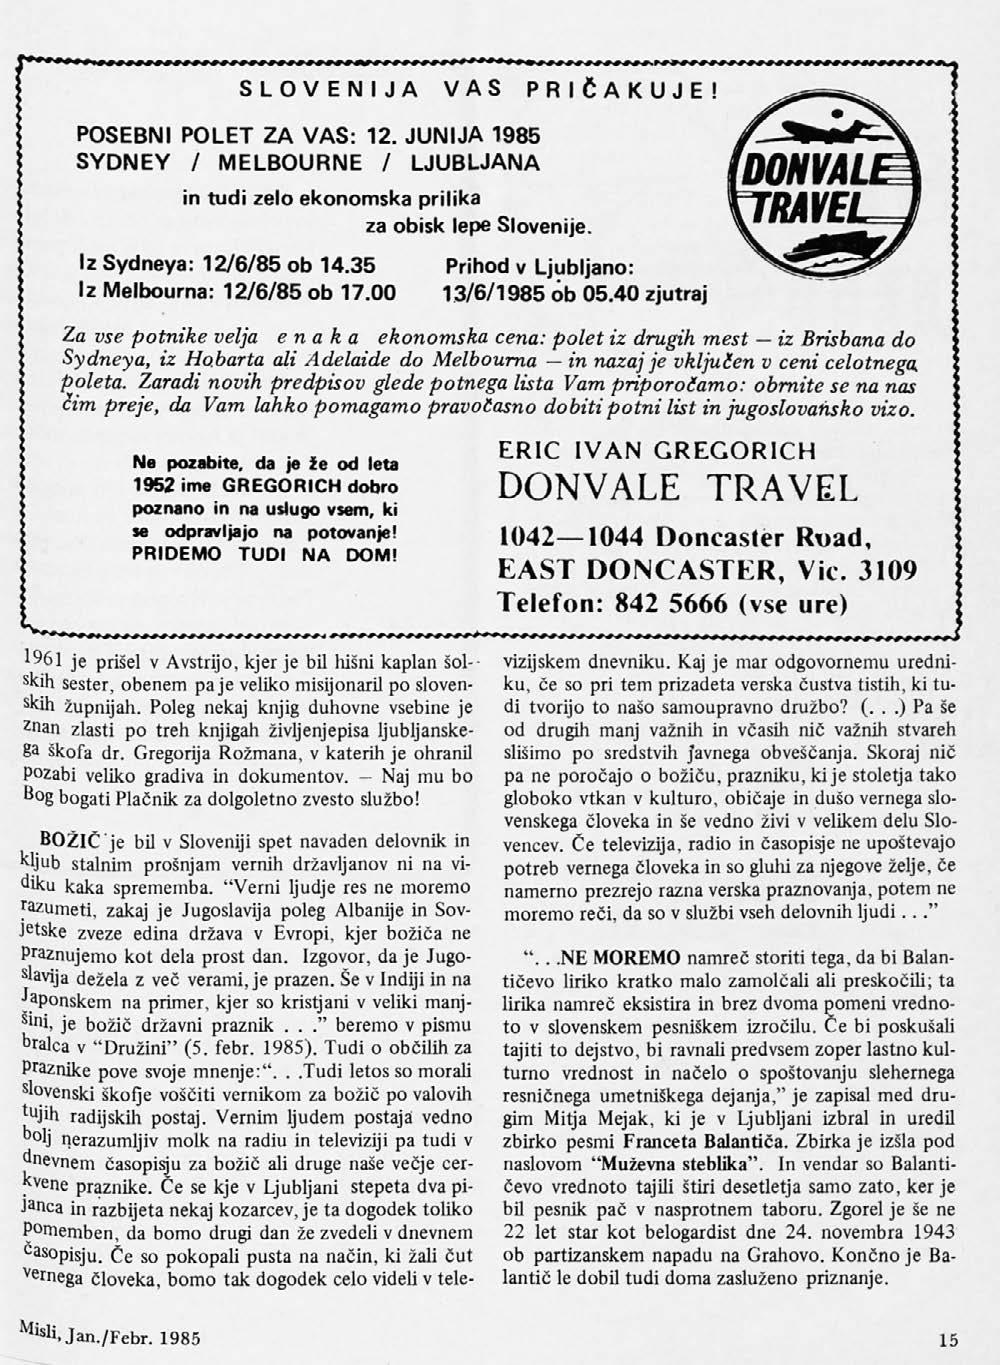 SLOVENIJA VAS PRIČAK POSEBNI POLET ZA V A S: 12. JUNIJA 1985 SY D N E Y / M ELBOURNE / LJUBLJANA in tudi zelo ek onom sk a prilika za obisk lepe Slovenije.